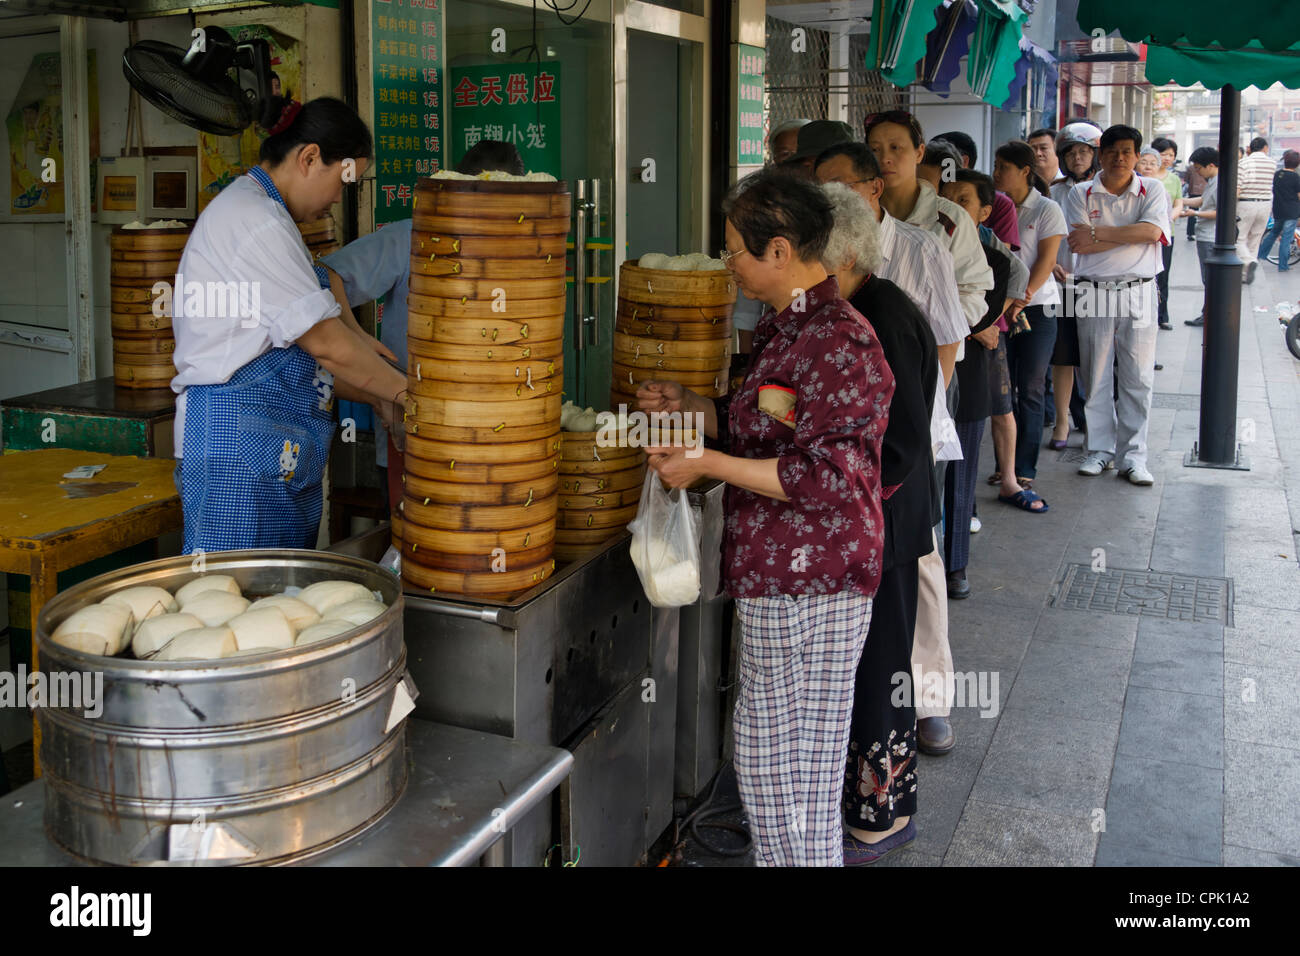 Menschen in der Schlange in einem Restaurant, Verkauf von berühmten gedämpfte Brötchen, Changshu, Provinz Jiangsu, China Stockfoto